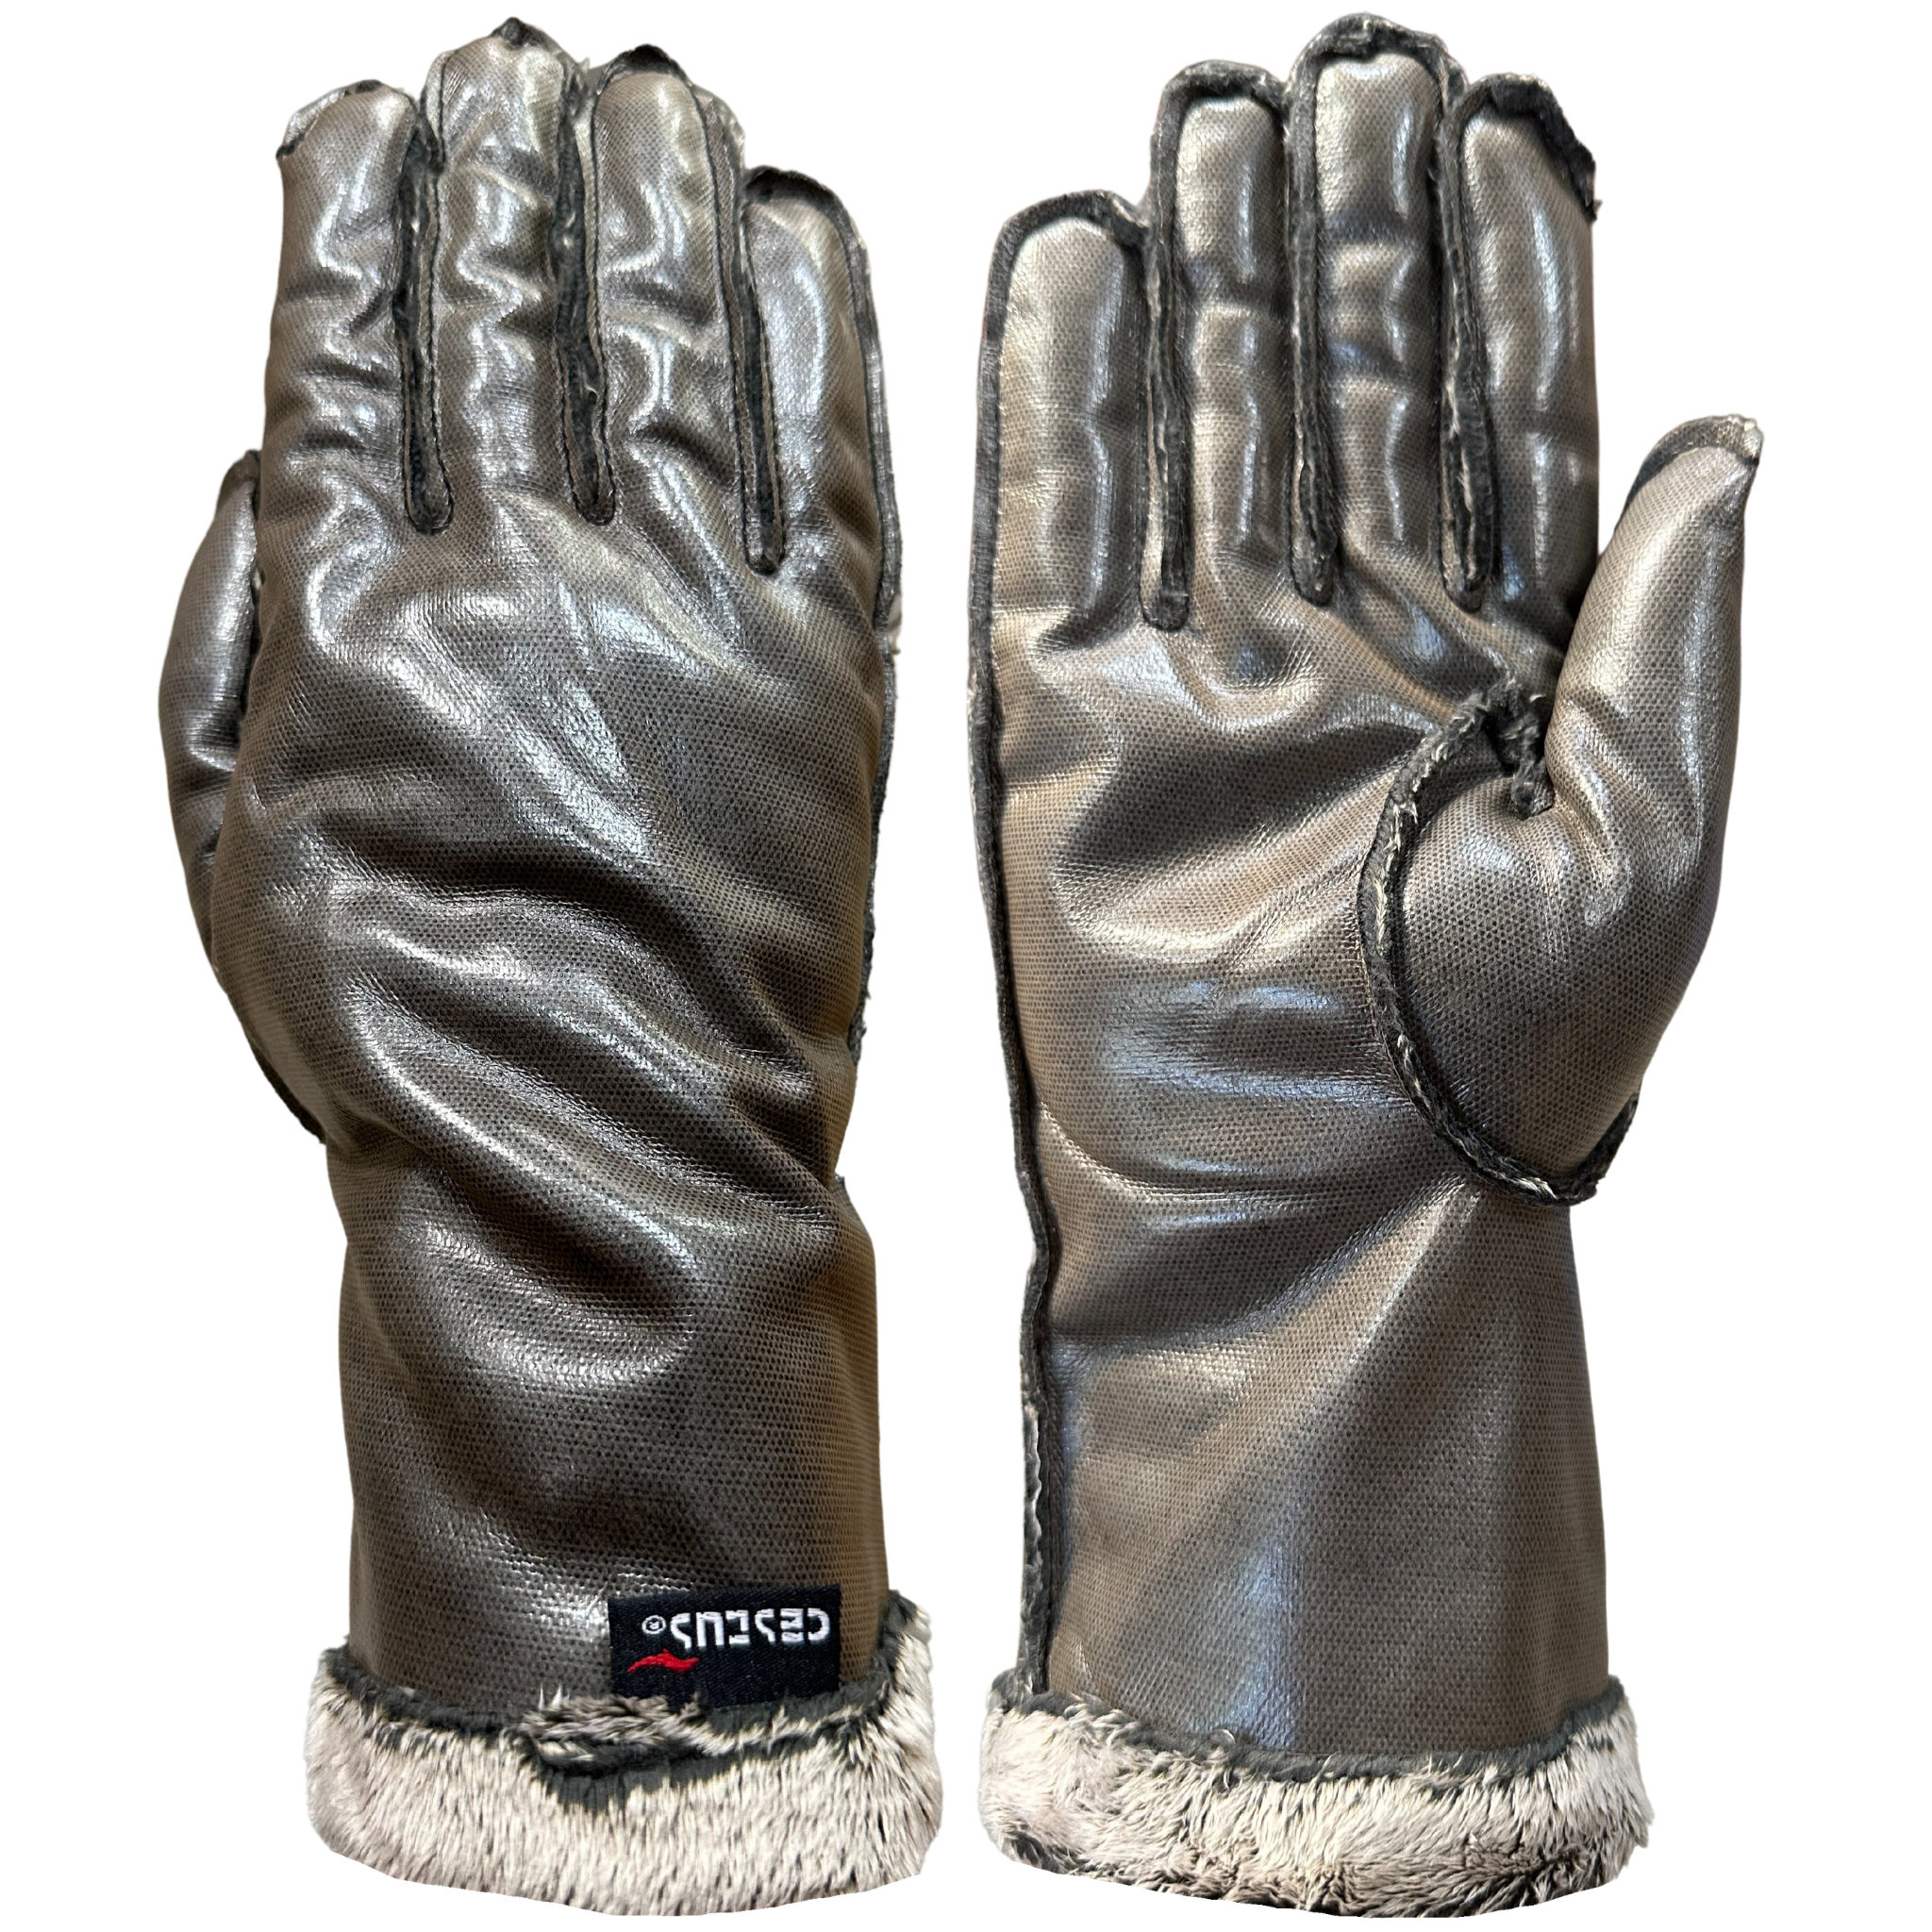 Sous gants en soie / Silk gloves liners - Airsport